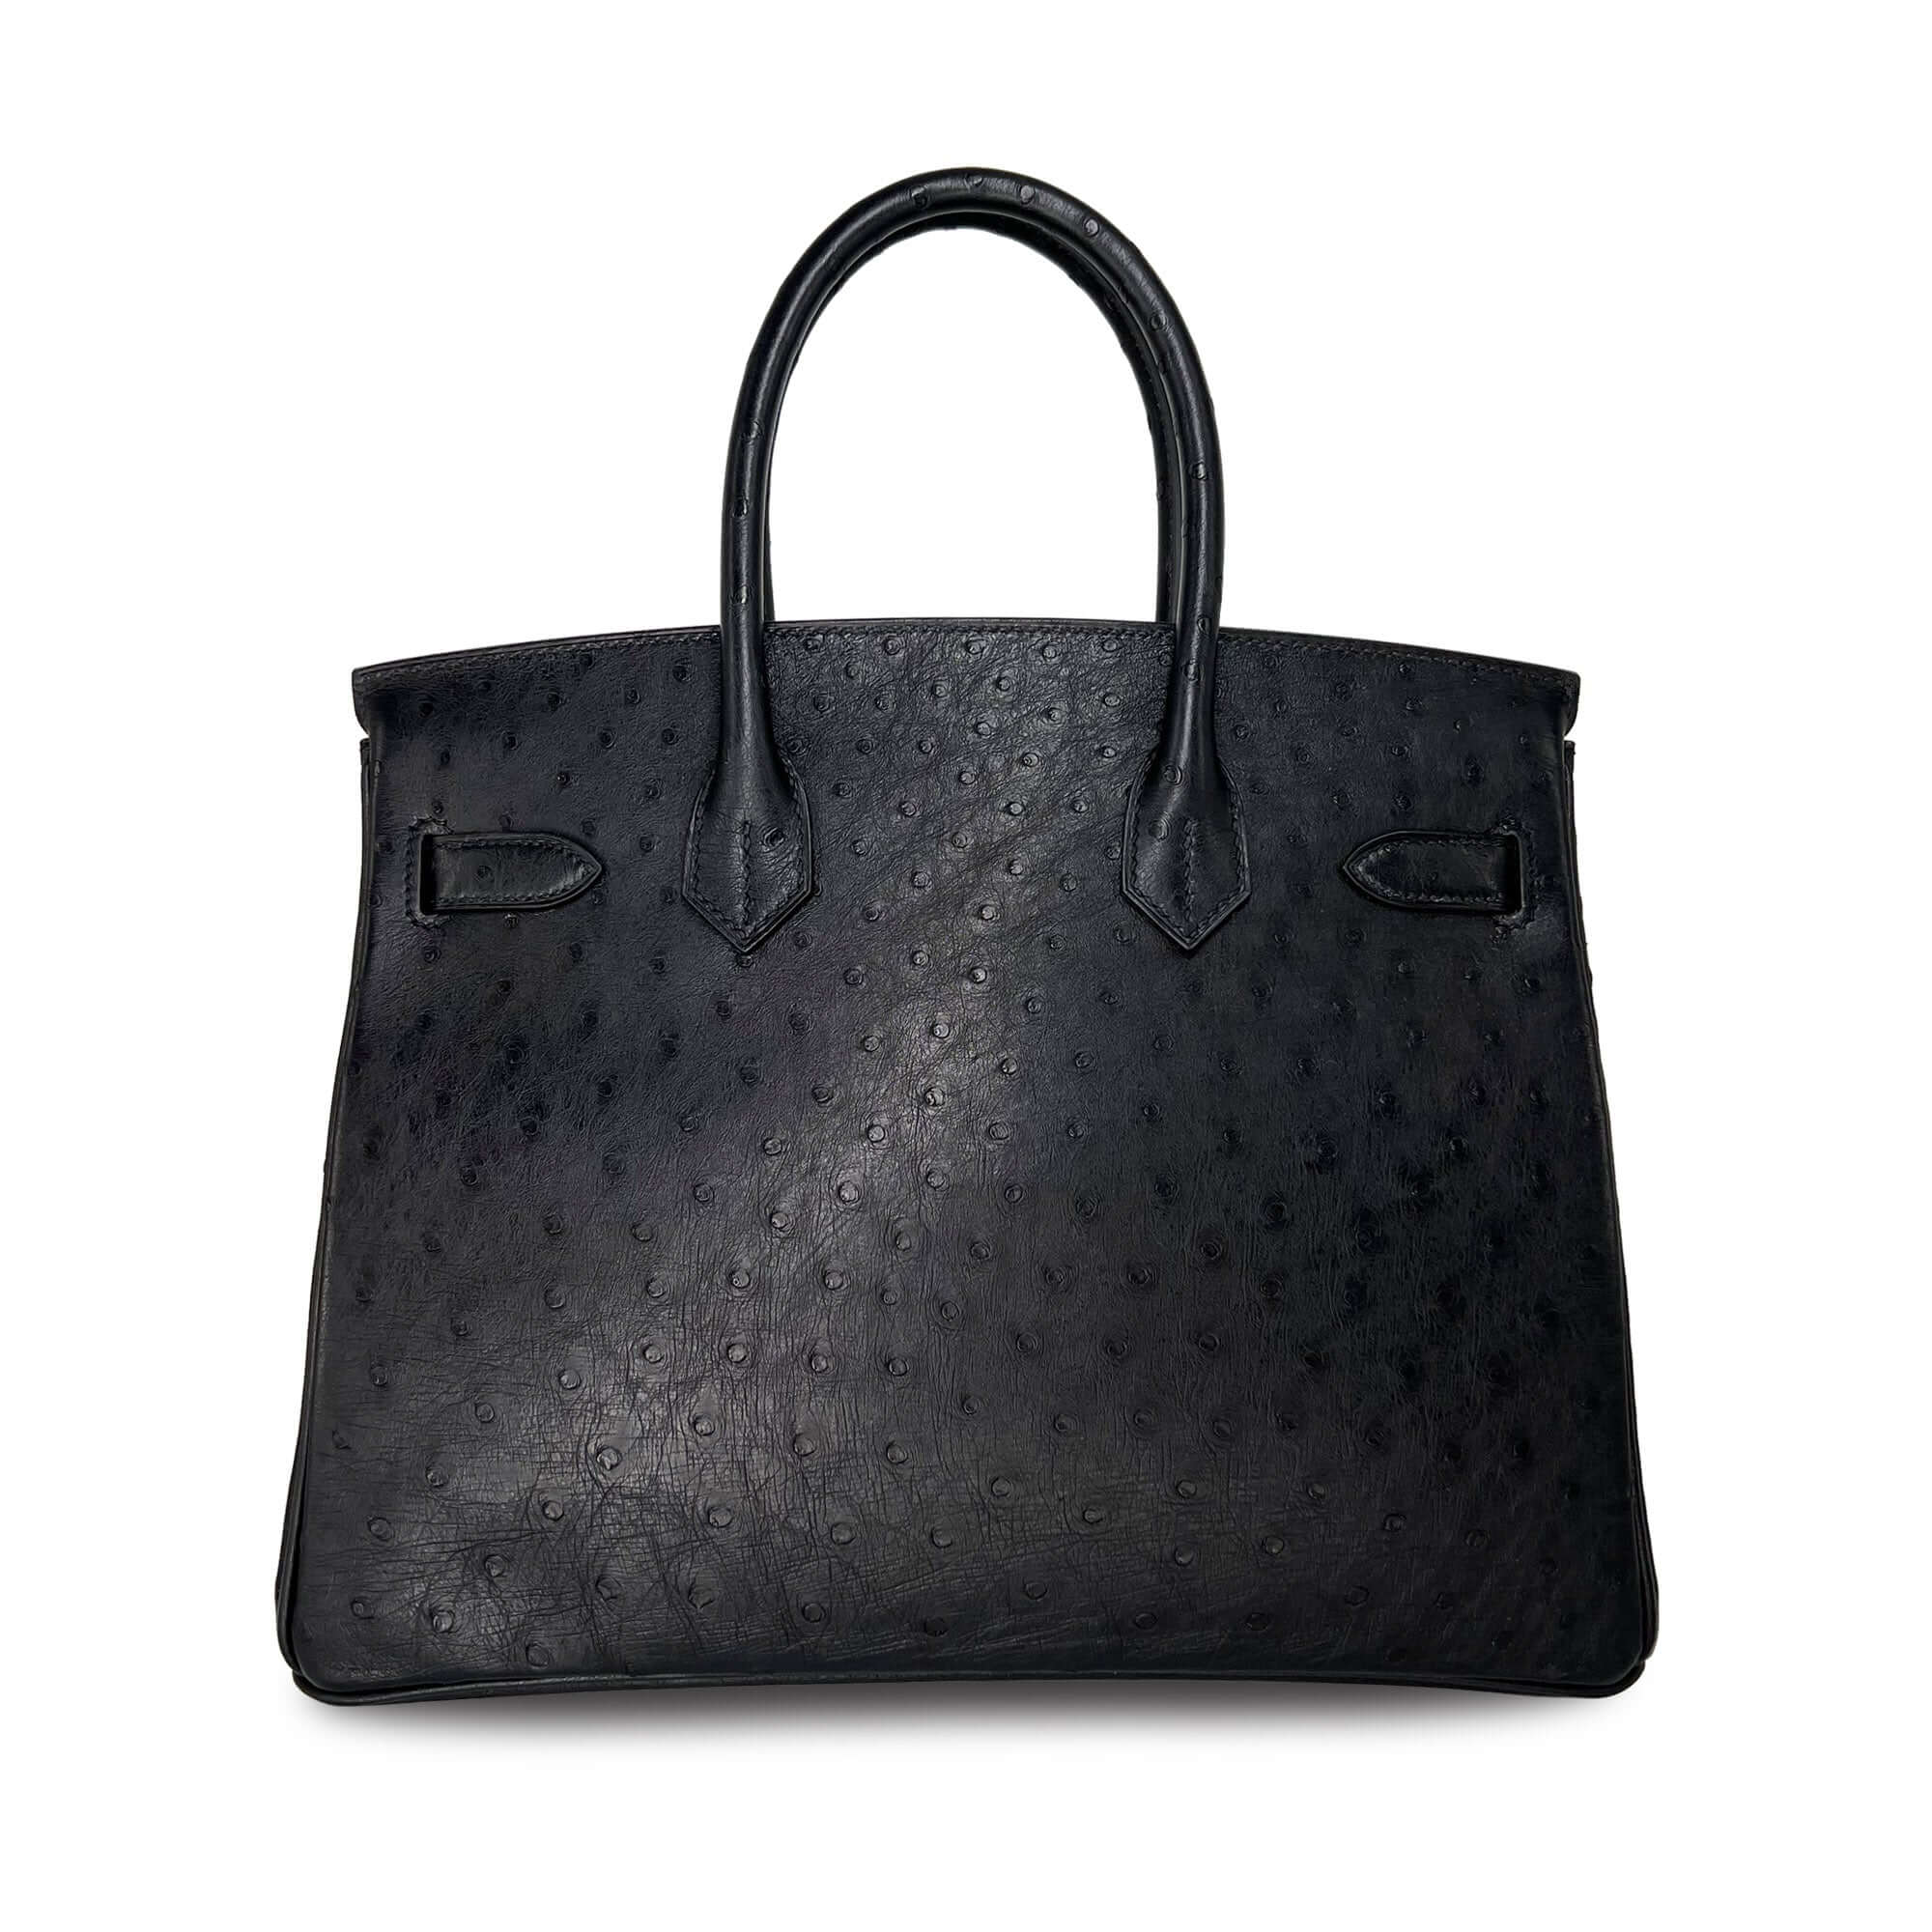 Hermes Birkin Noir Designer Bag back